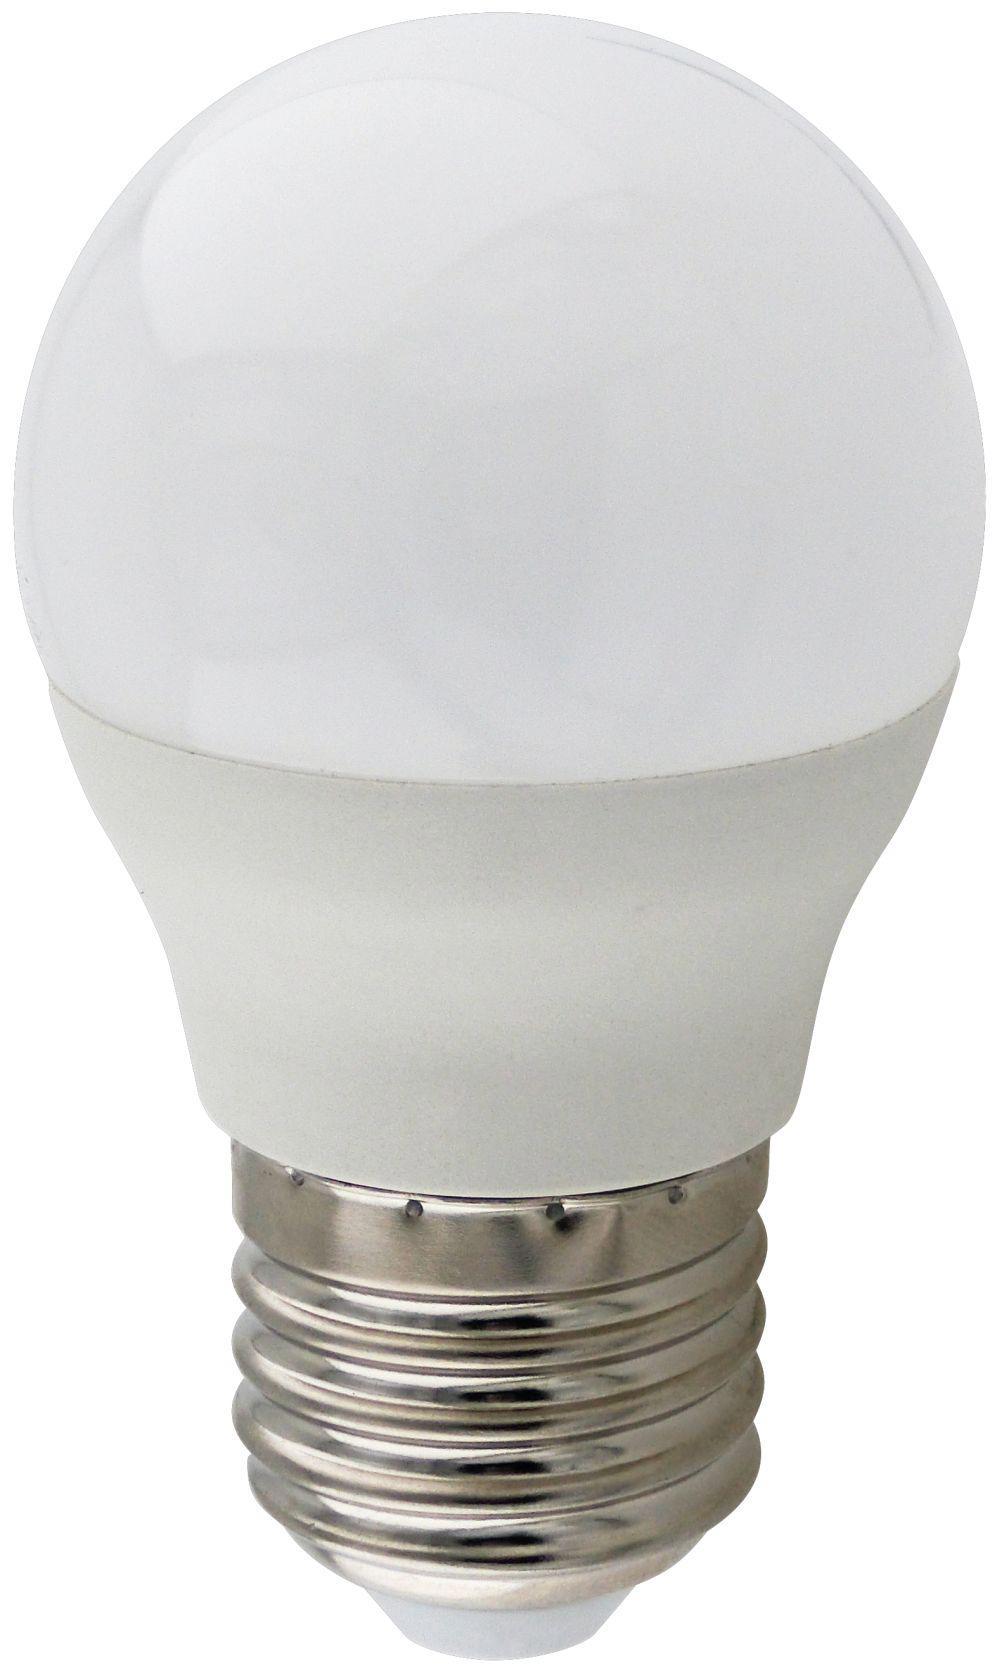 90121400 Лампа Premium светодионая E27 9 Вт шар 810 Лм холодный свет STLM-0112525 ECOLA